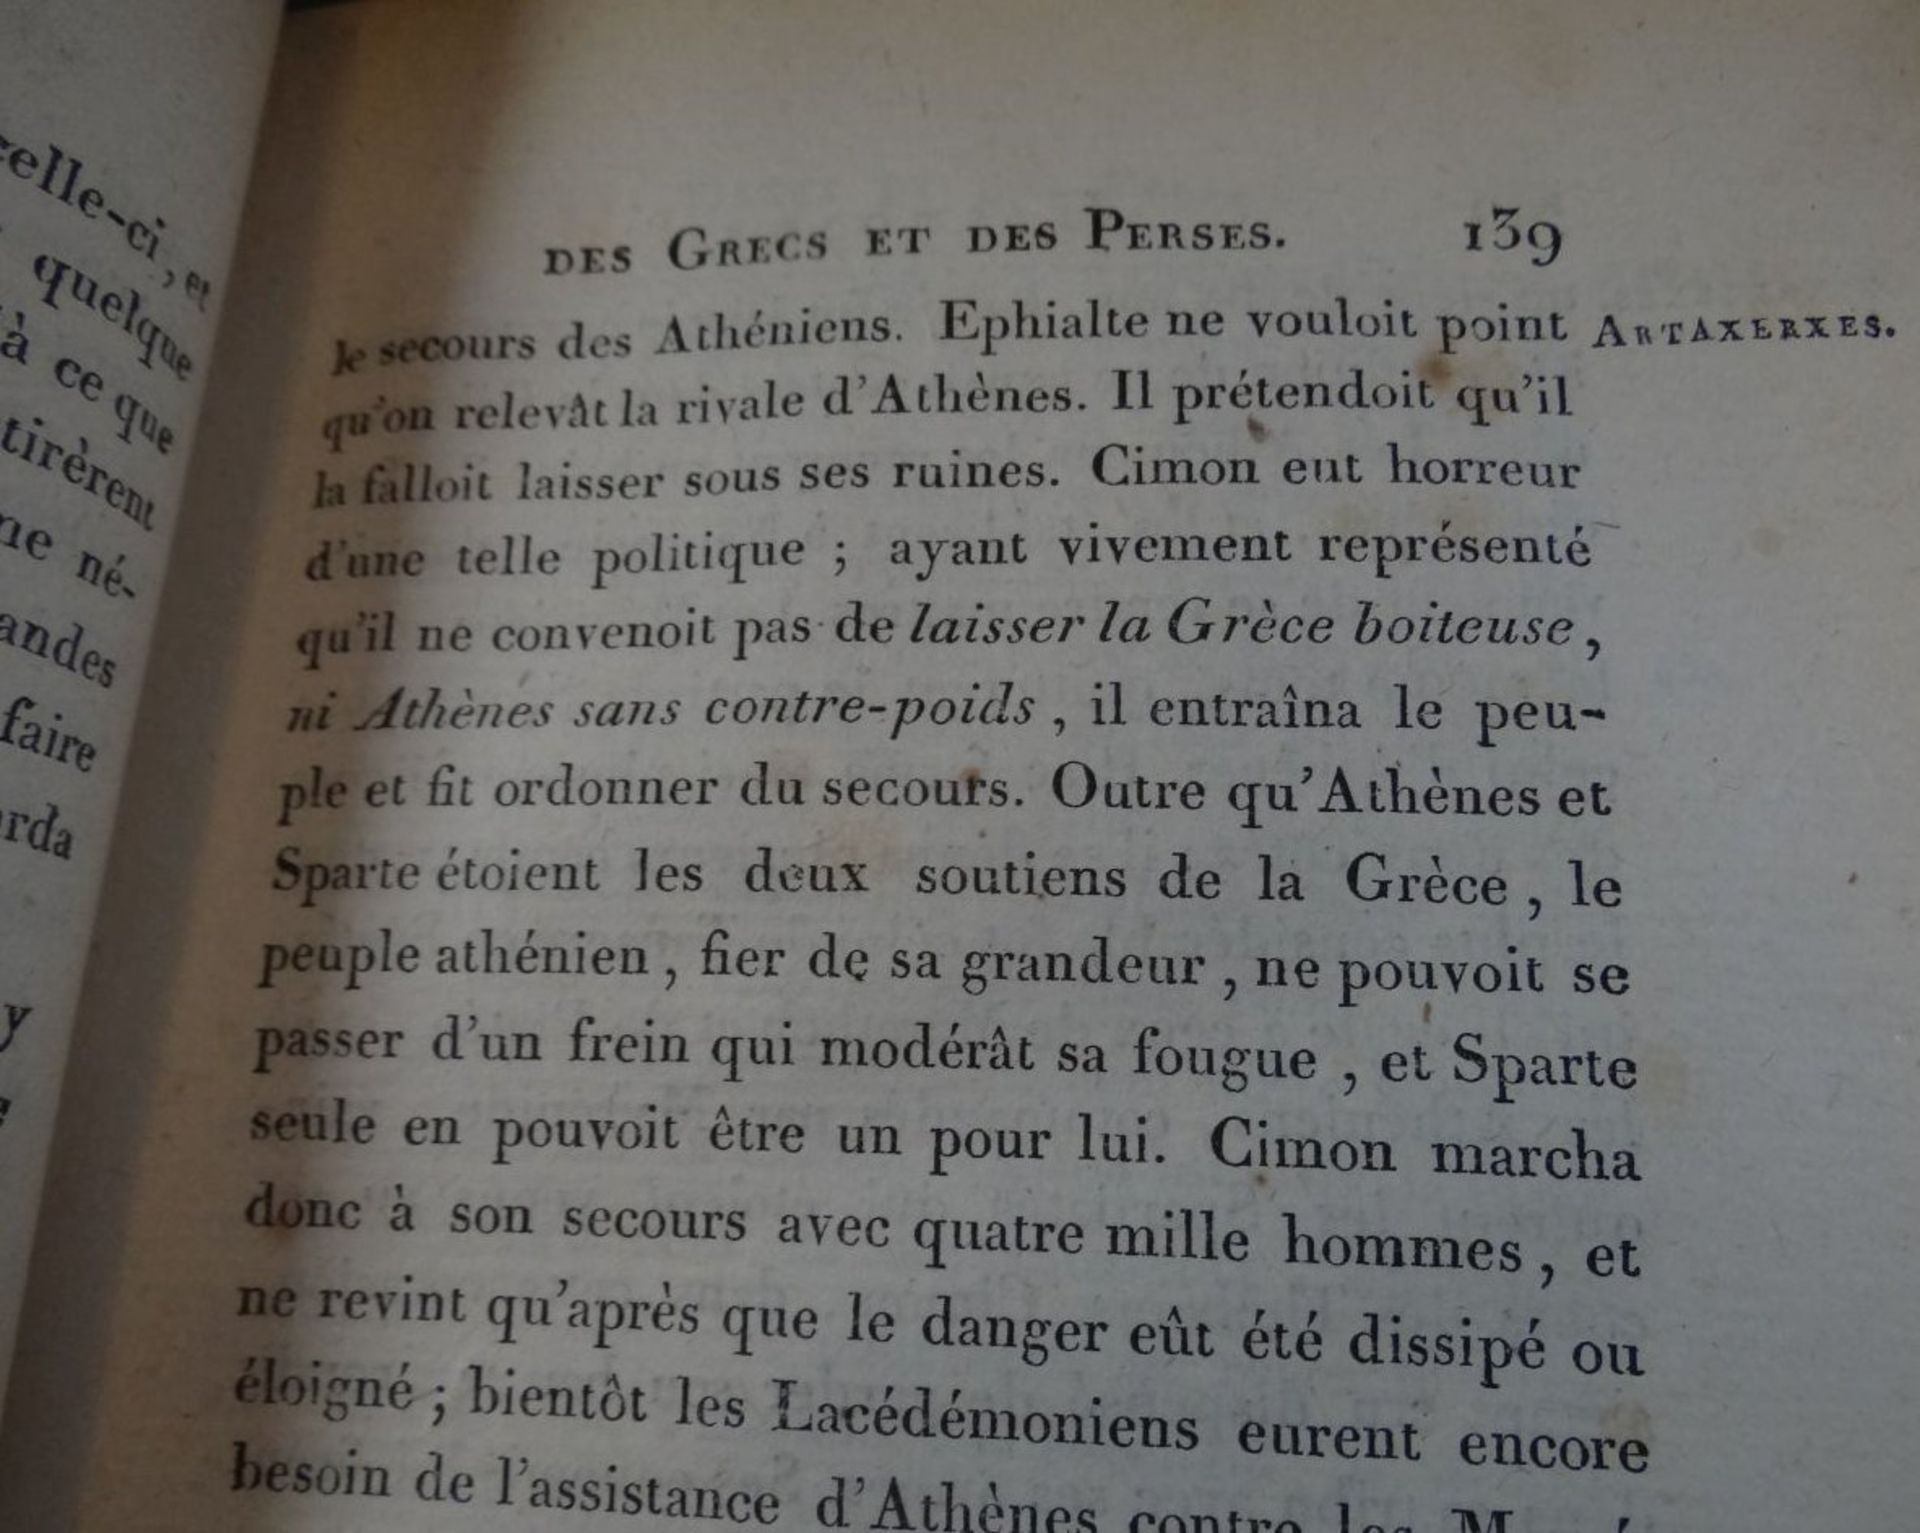 3 Bände "Prècis de L'Historire Ancienne" 1805, Ledereinbände, Gebrauchsspuren, Bd. 2-3-4, französis - Image 3 of 10